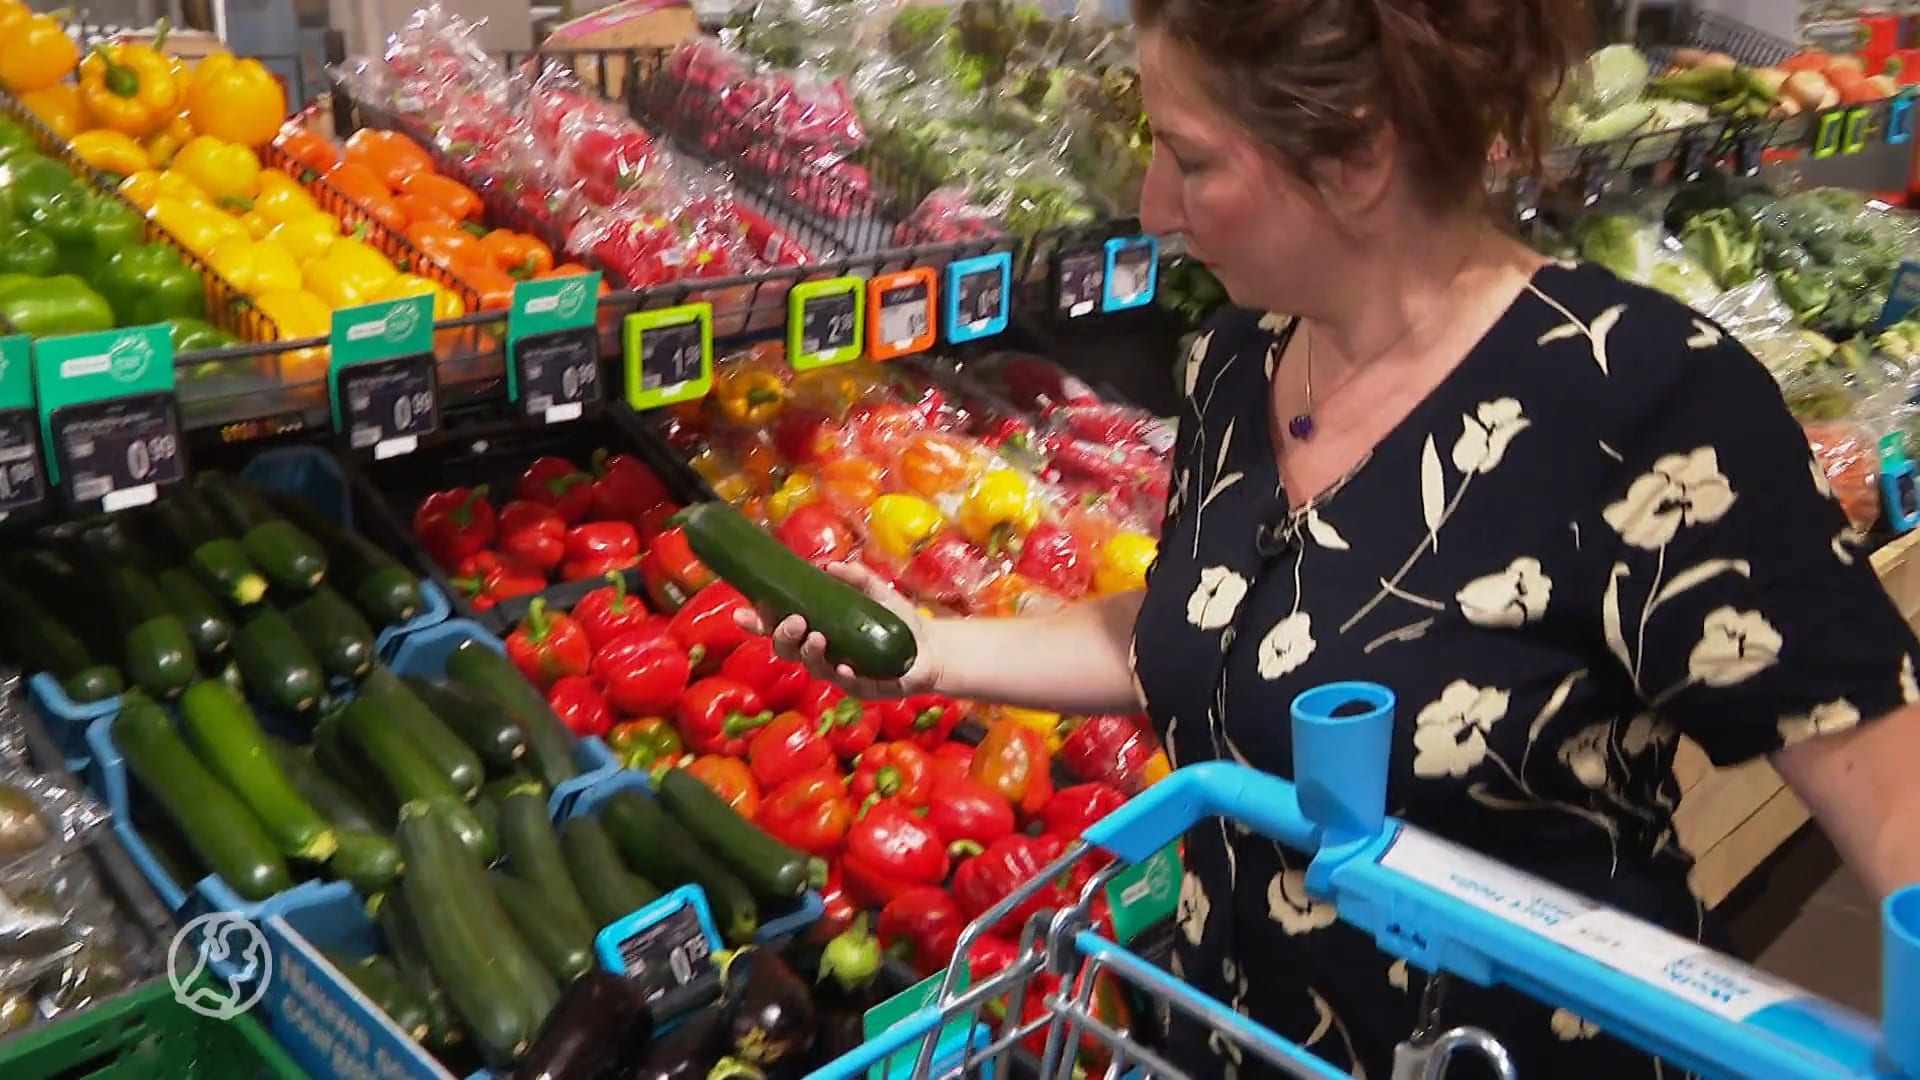 Gierige Gerda geeft tips in strijd tegen torenhoge supermarktprijzen